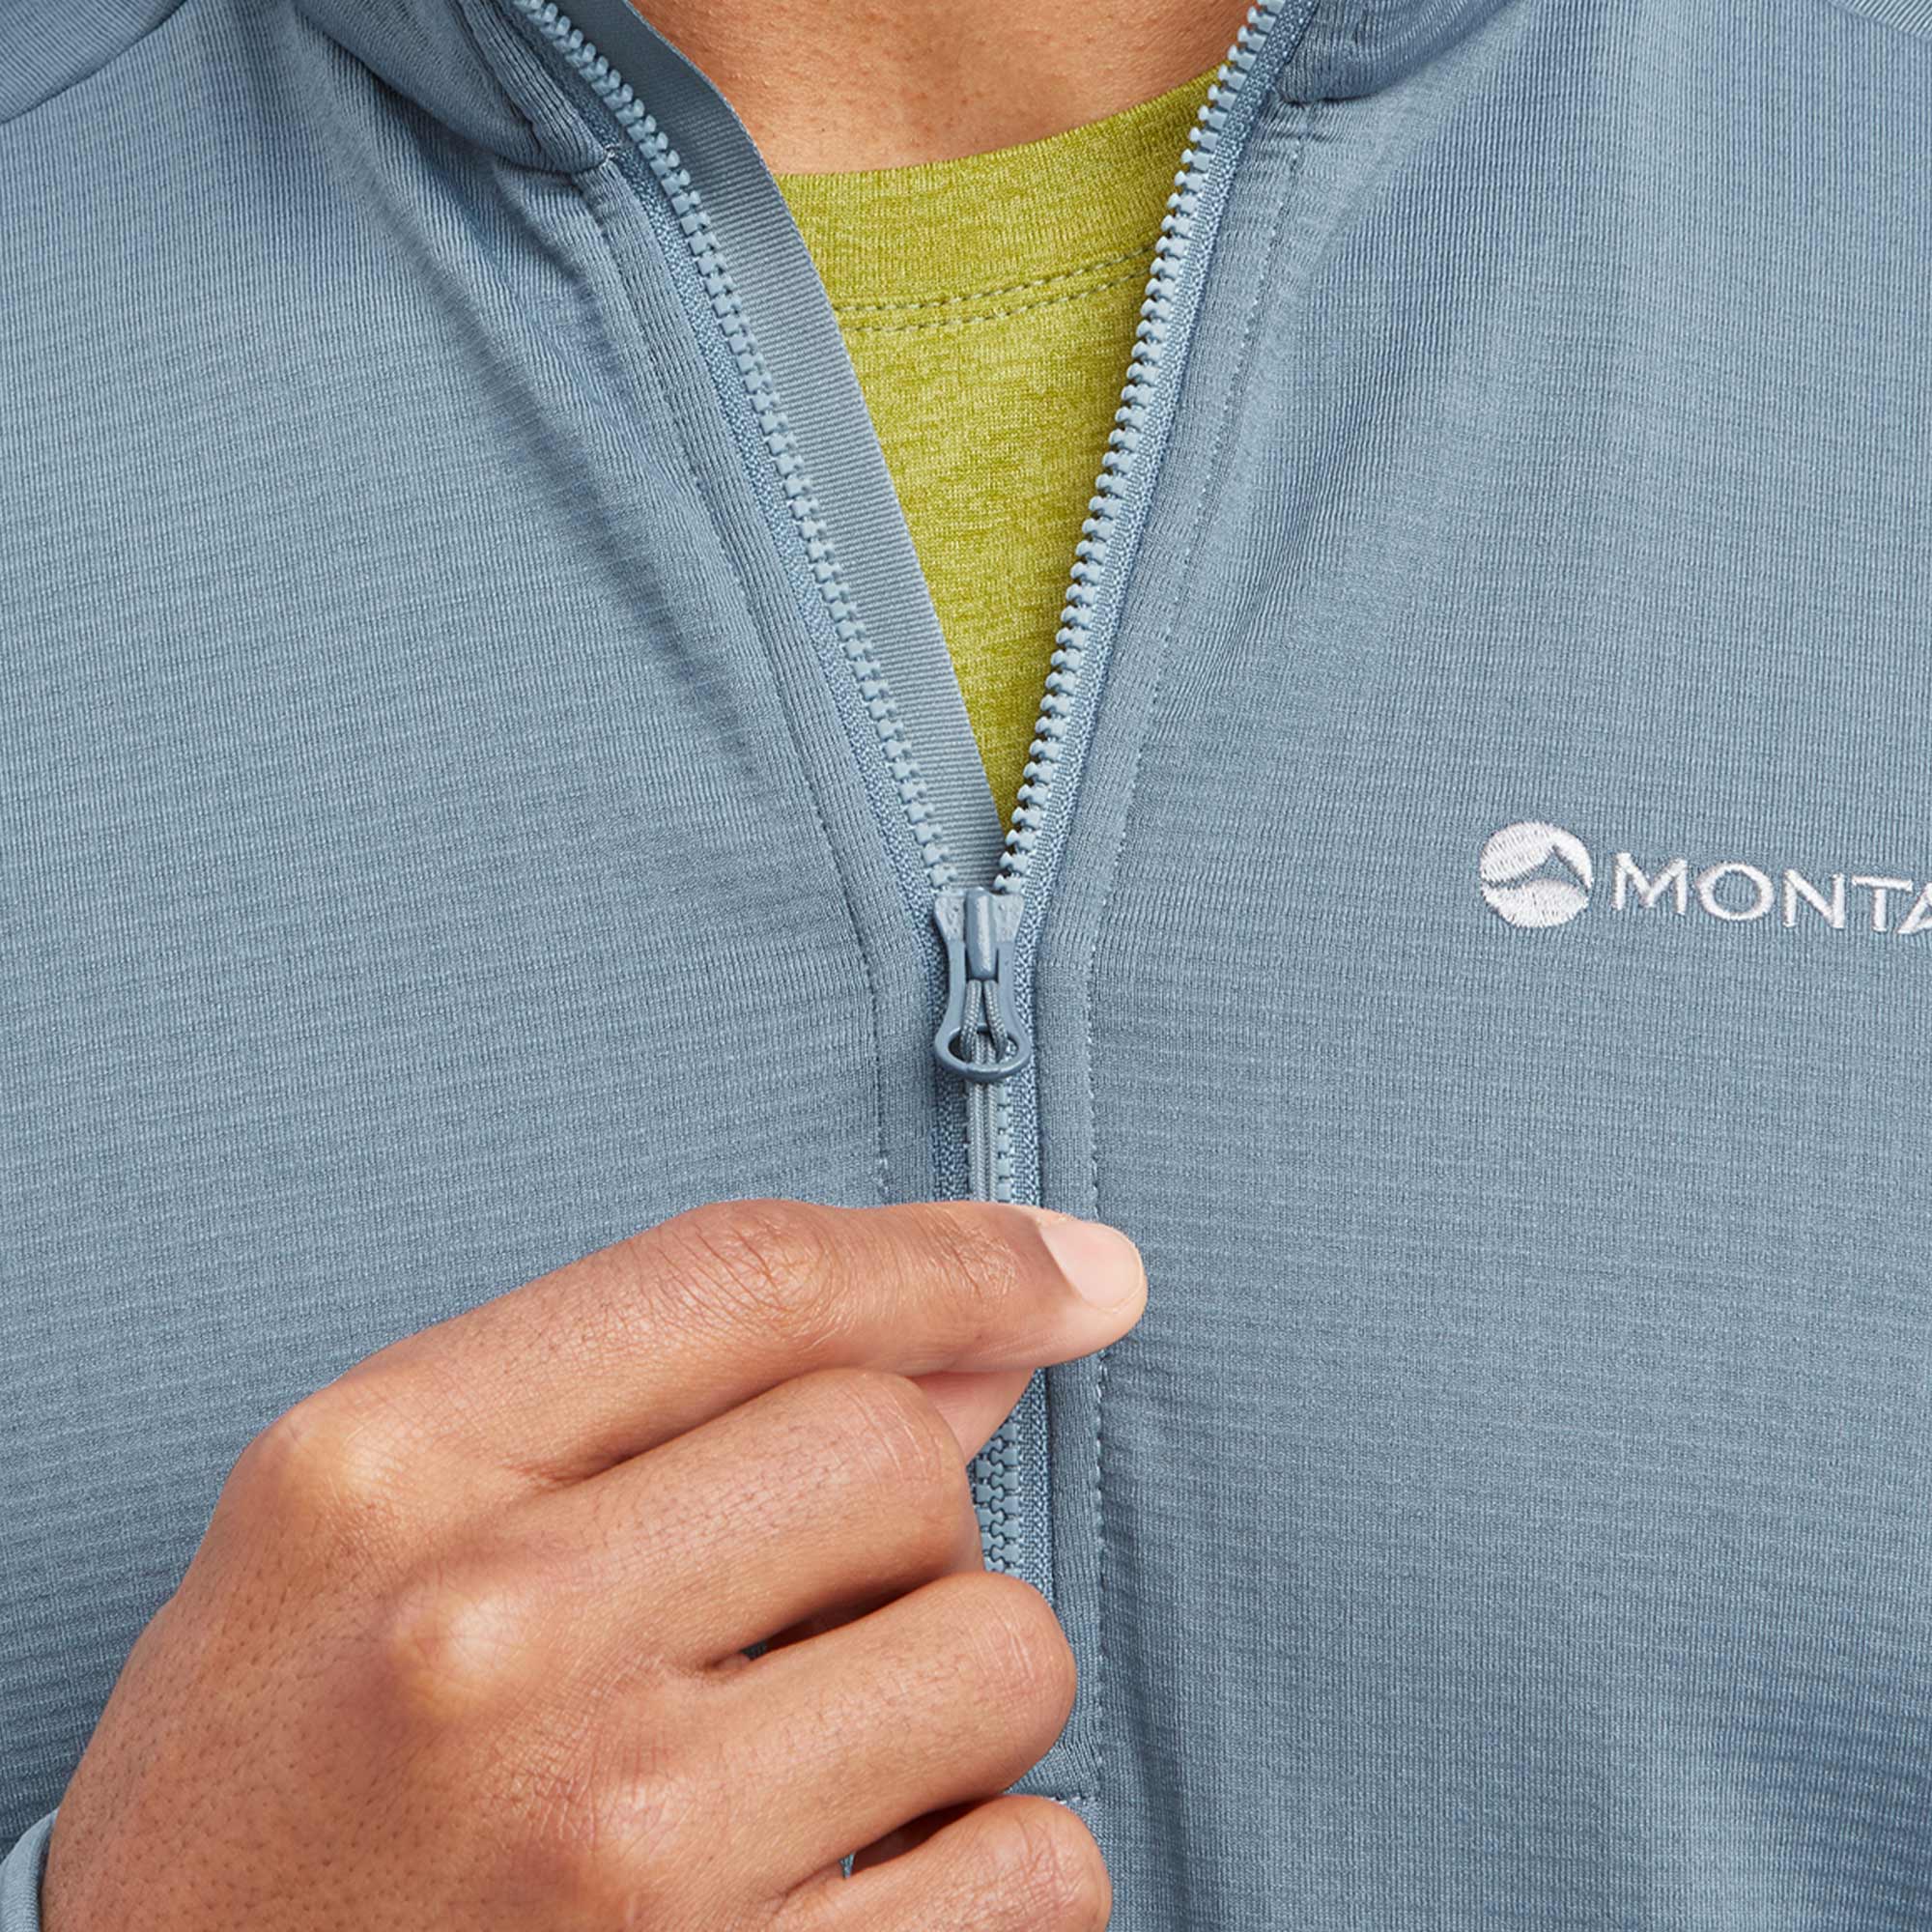 Montane Protium Fleece Pull-On Jacket – Montane - UK